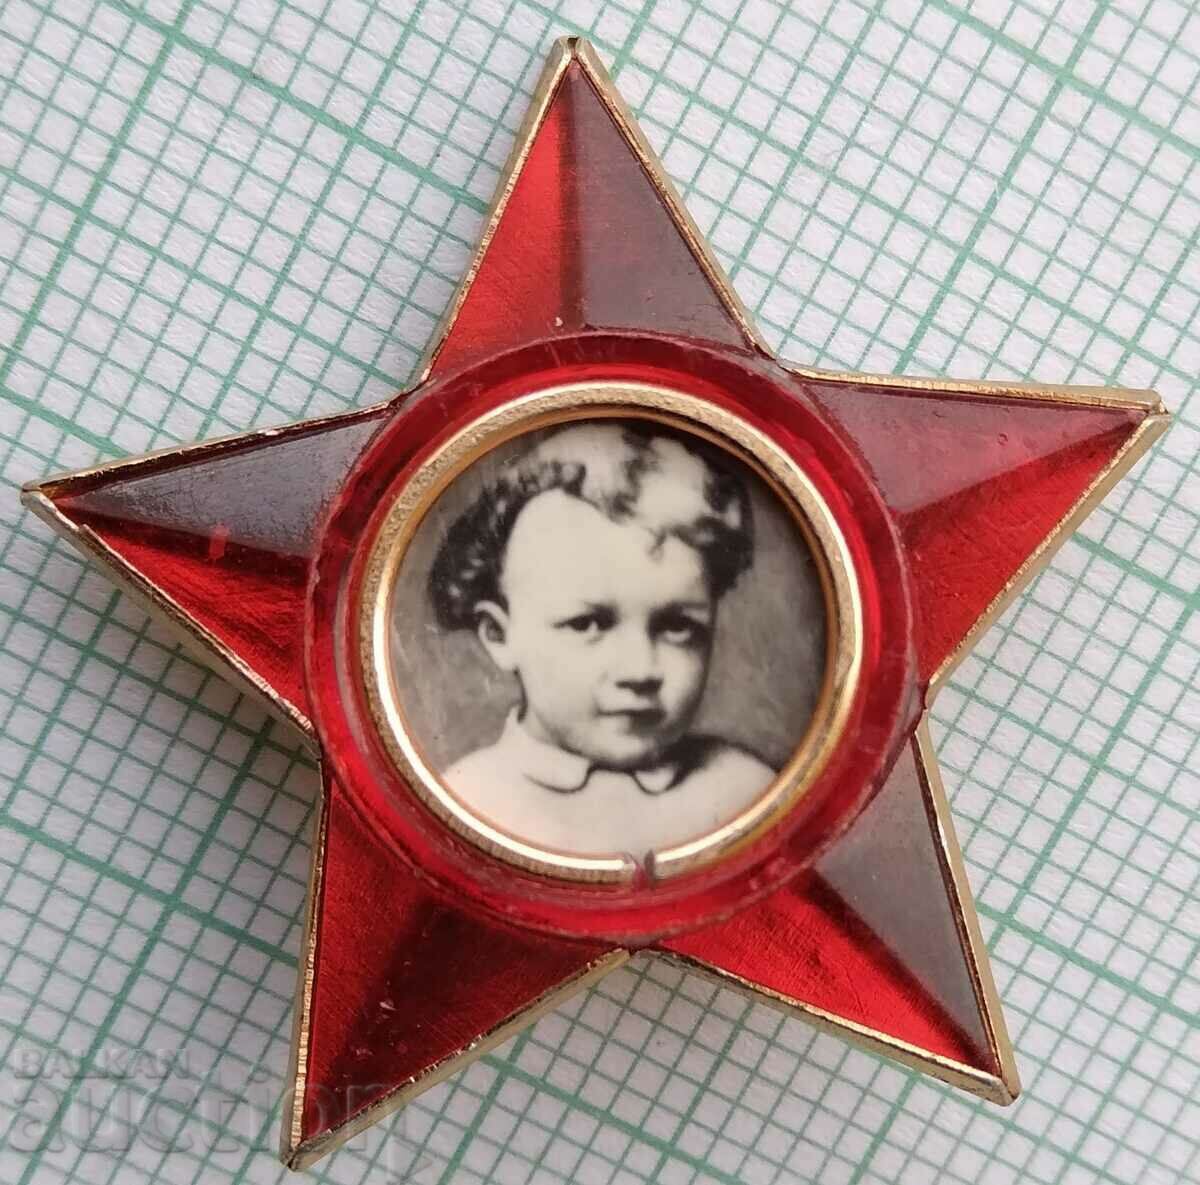 15387 Badge - Lenin